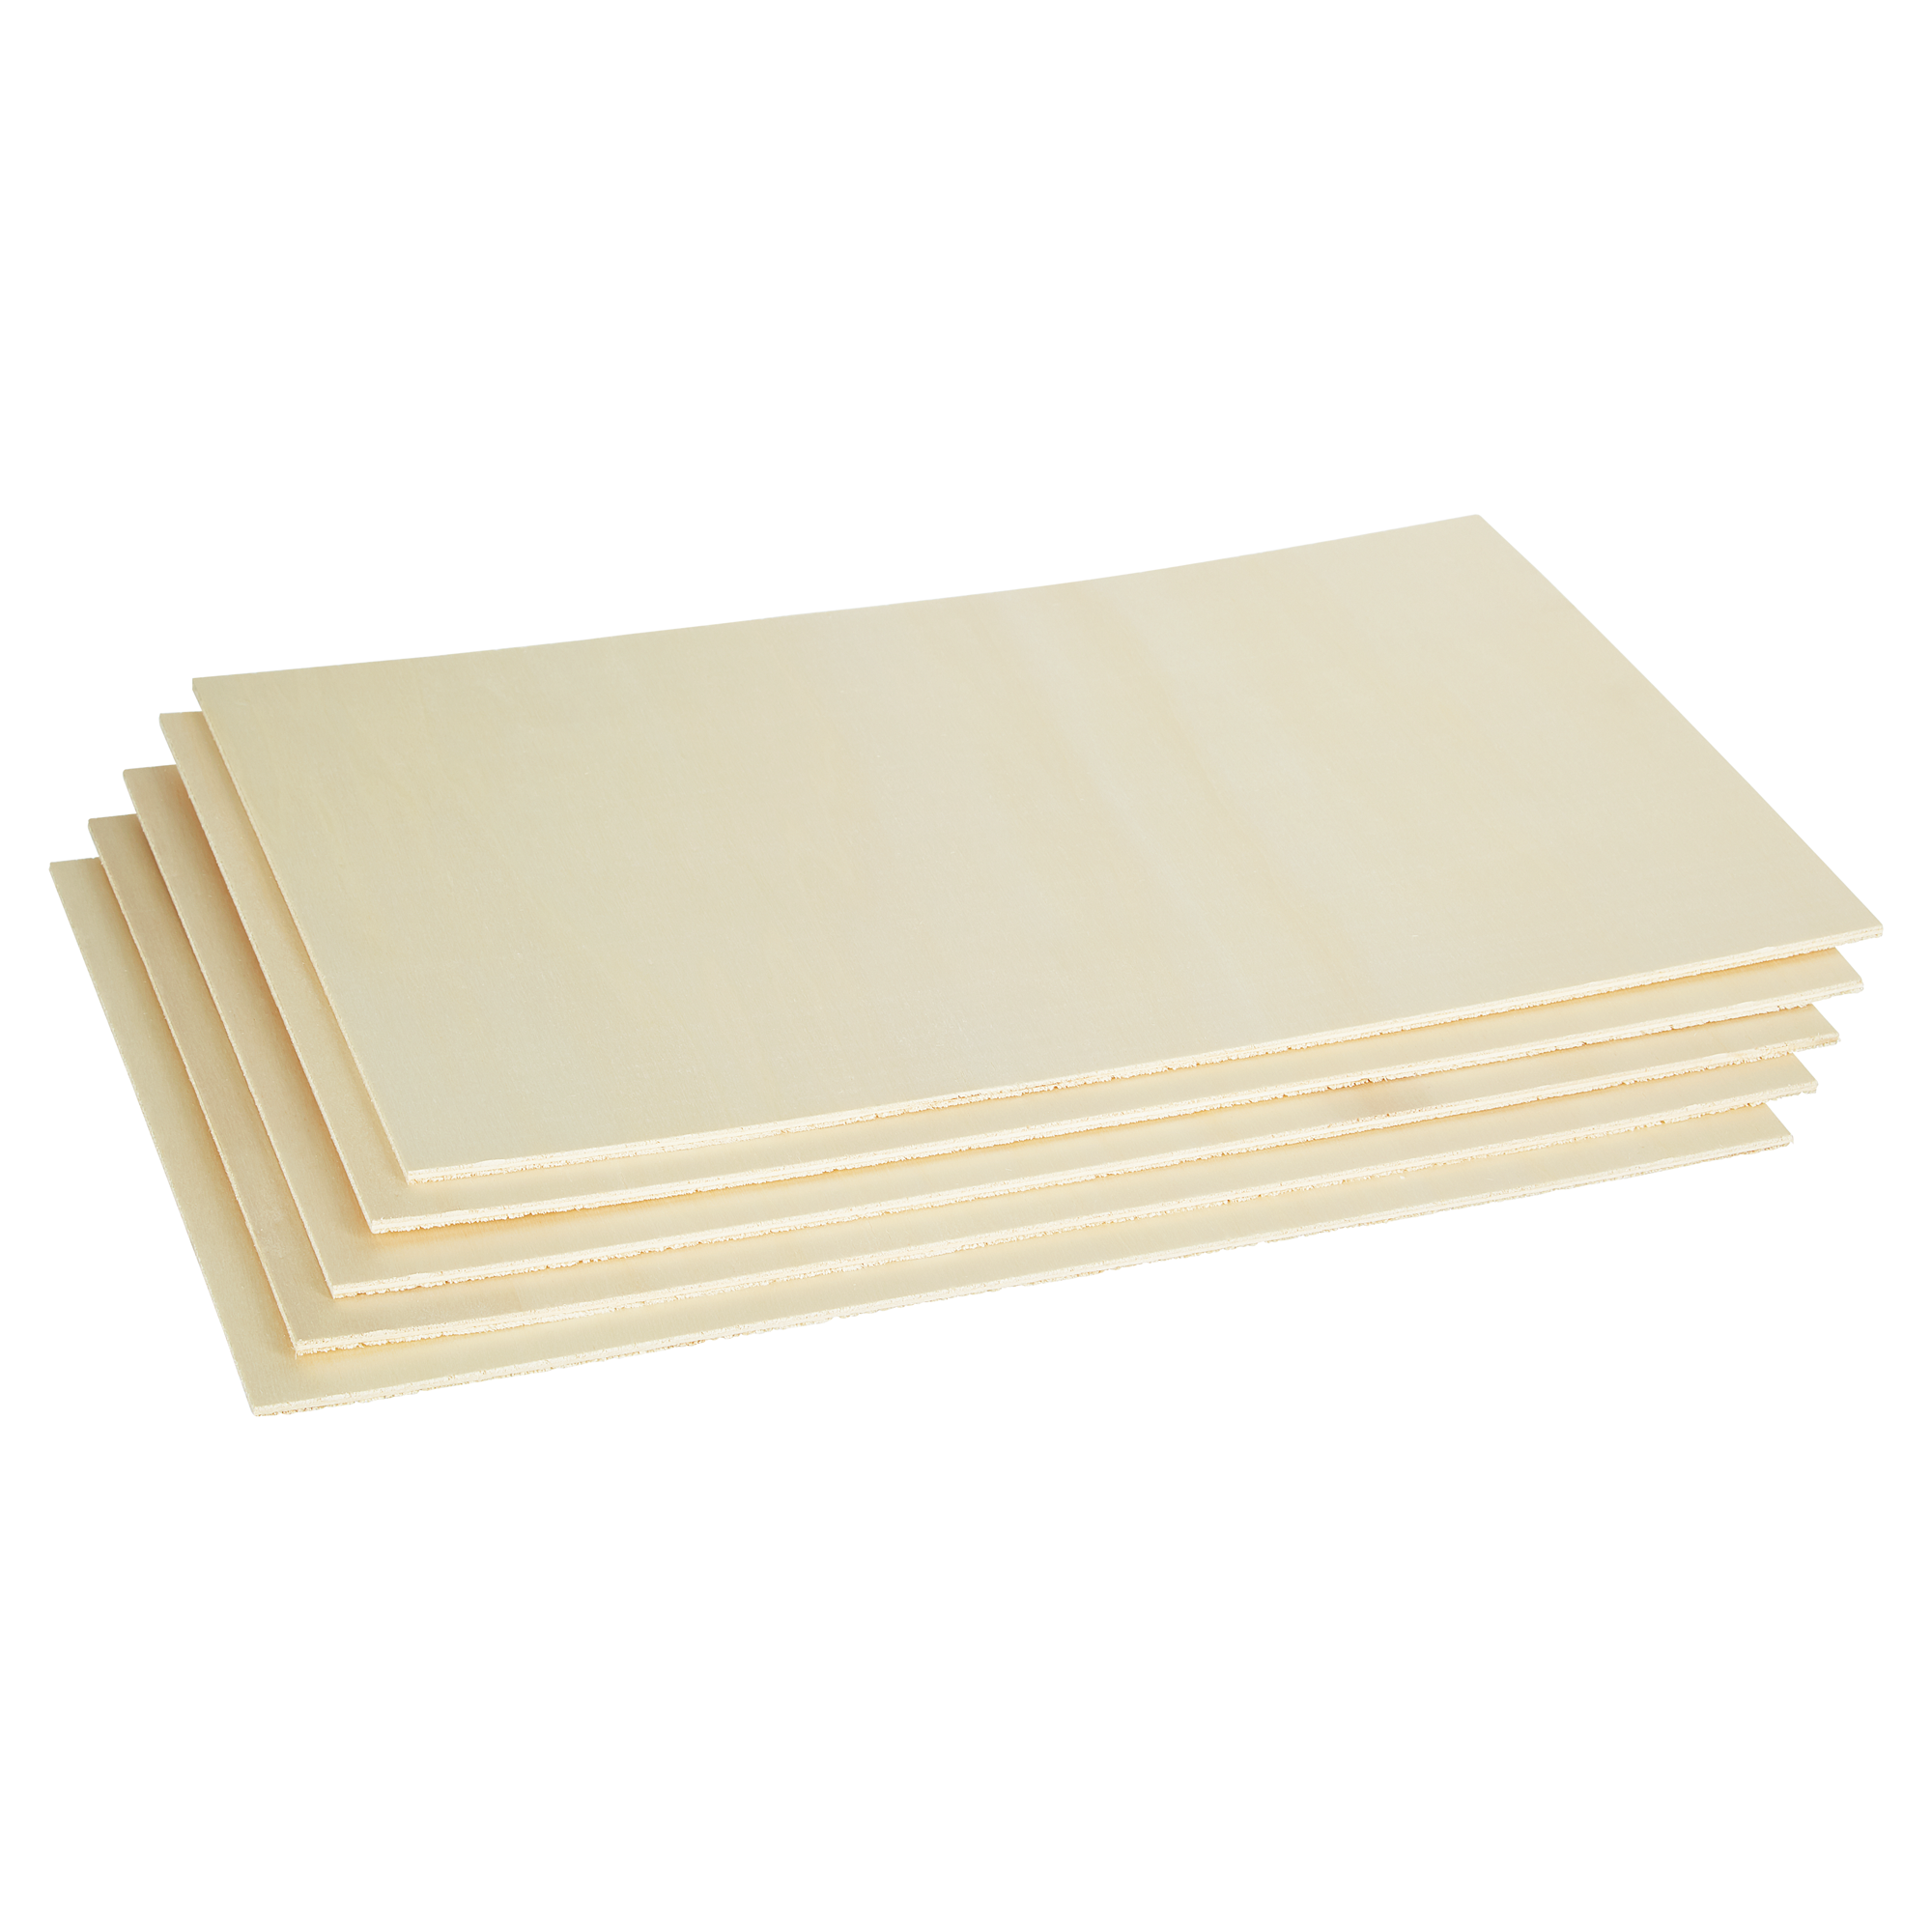 Sperrholzplatten Pappel - A3  420 x 297 x 3 (+-0,5) mm